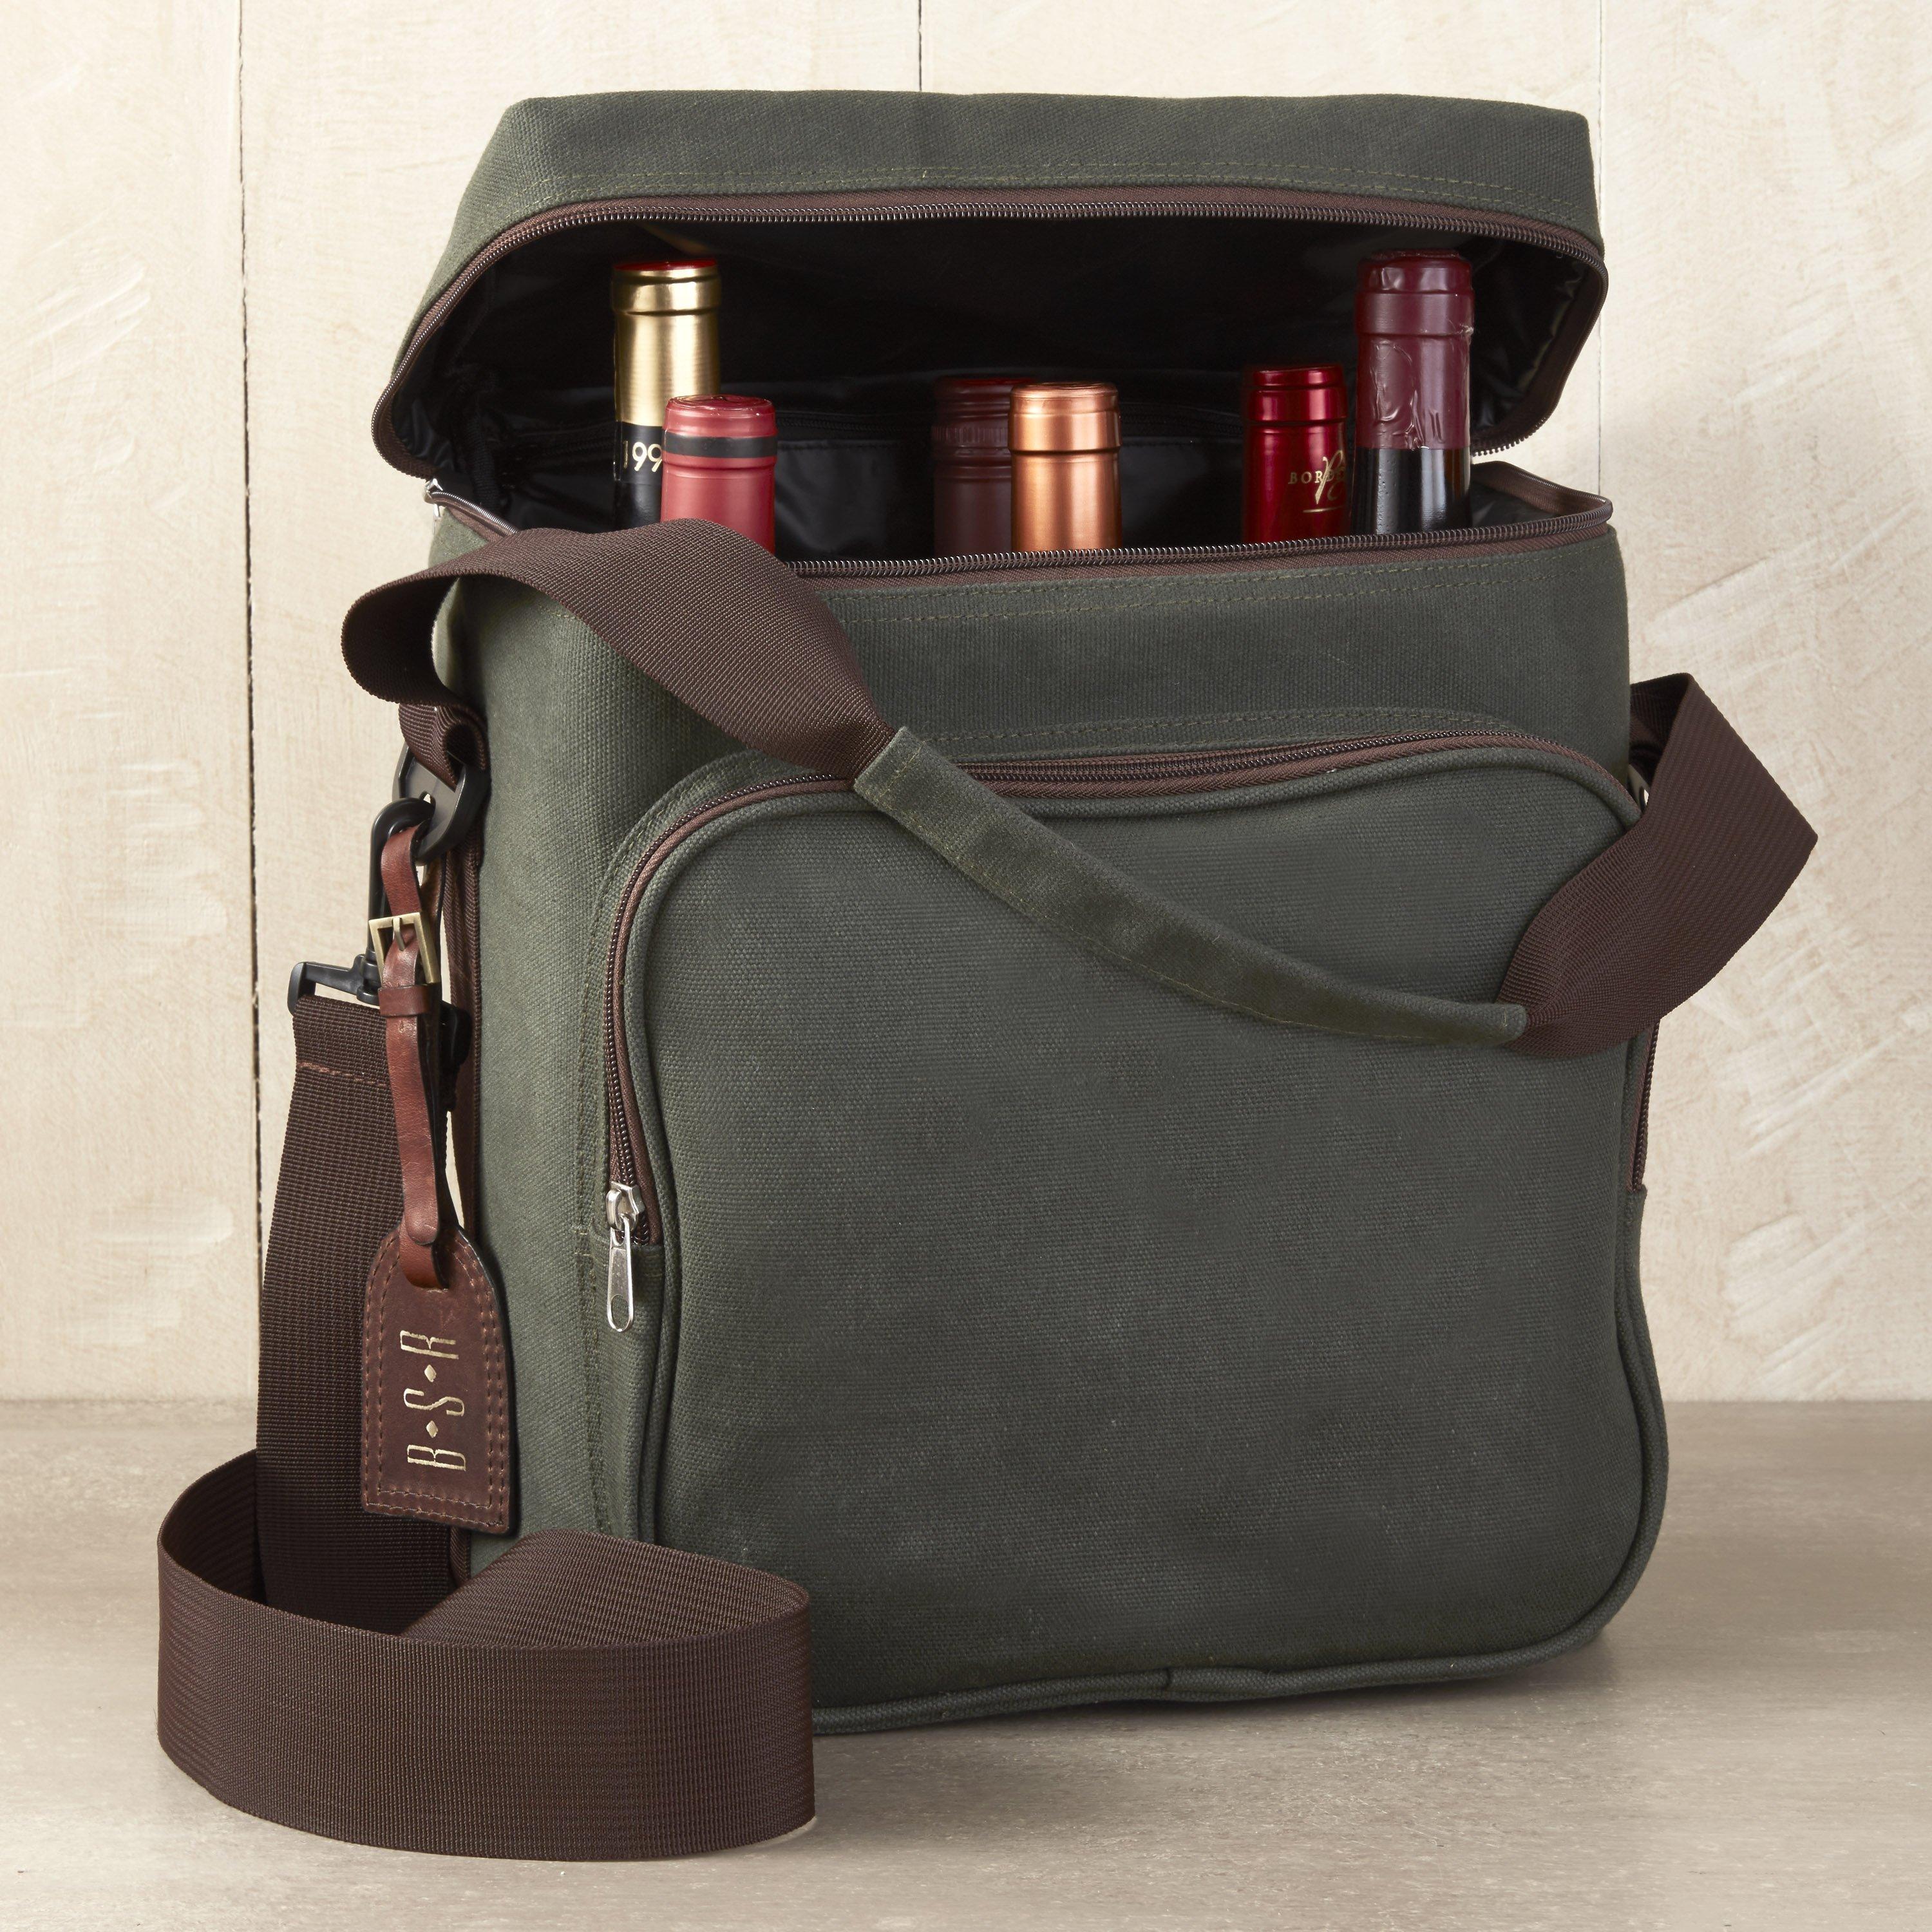 Function 2.0 Water bottle Holder Bag with Phone Pocket and Adjustable  Shoulder Strap I Bottle Carrying Case I Wine Bottle Carrier Bag